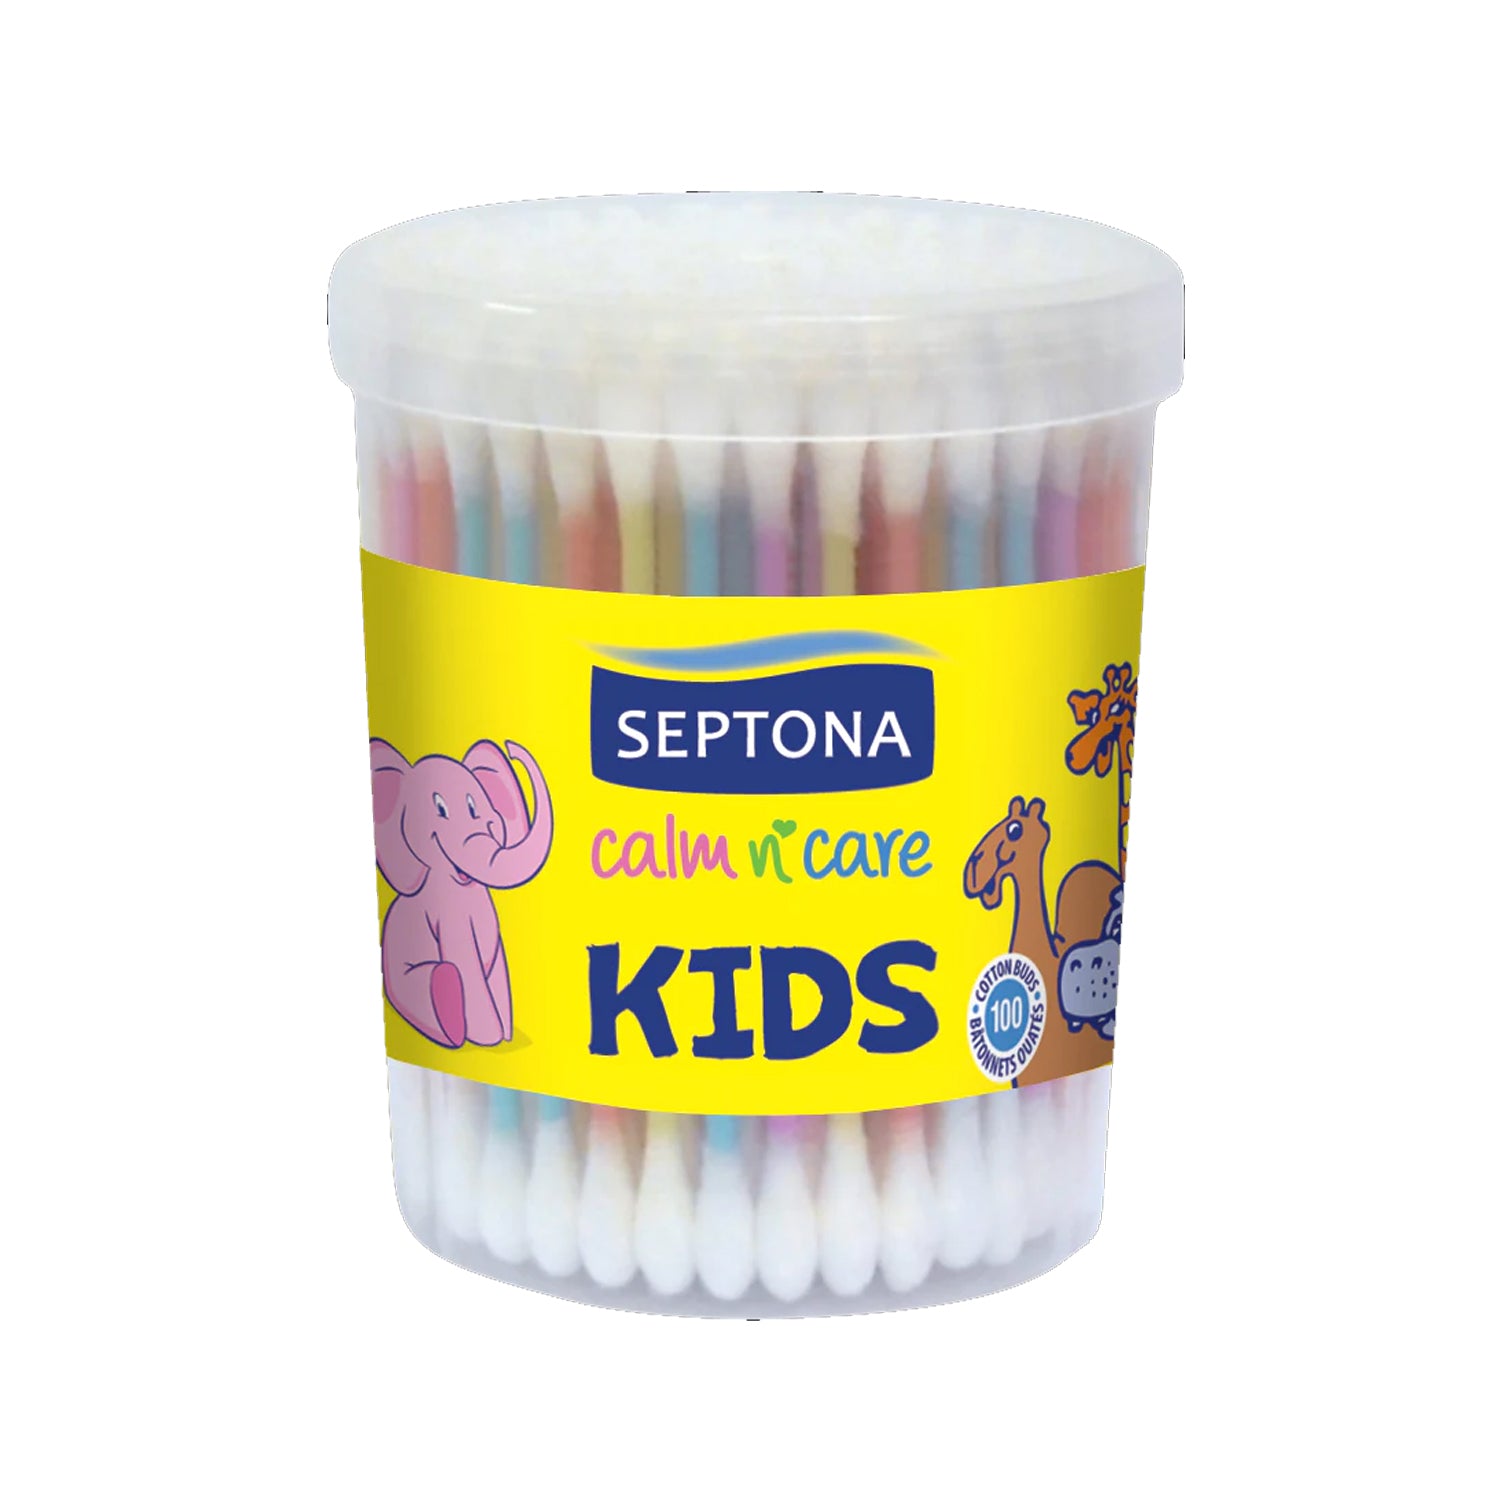 SEPTONA Calm n Care COTTON BUDS for KIDS 100 pcs